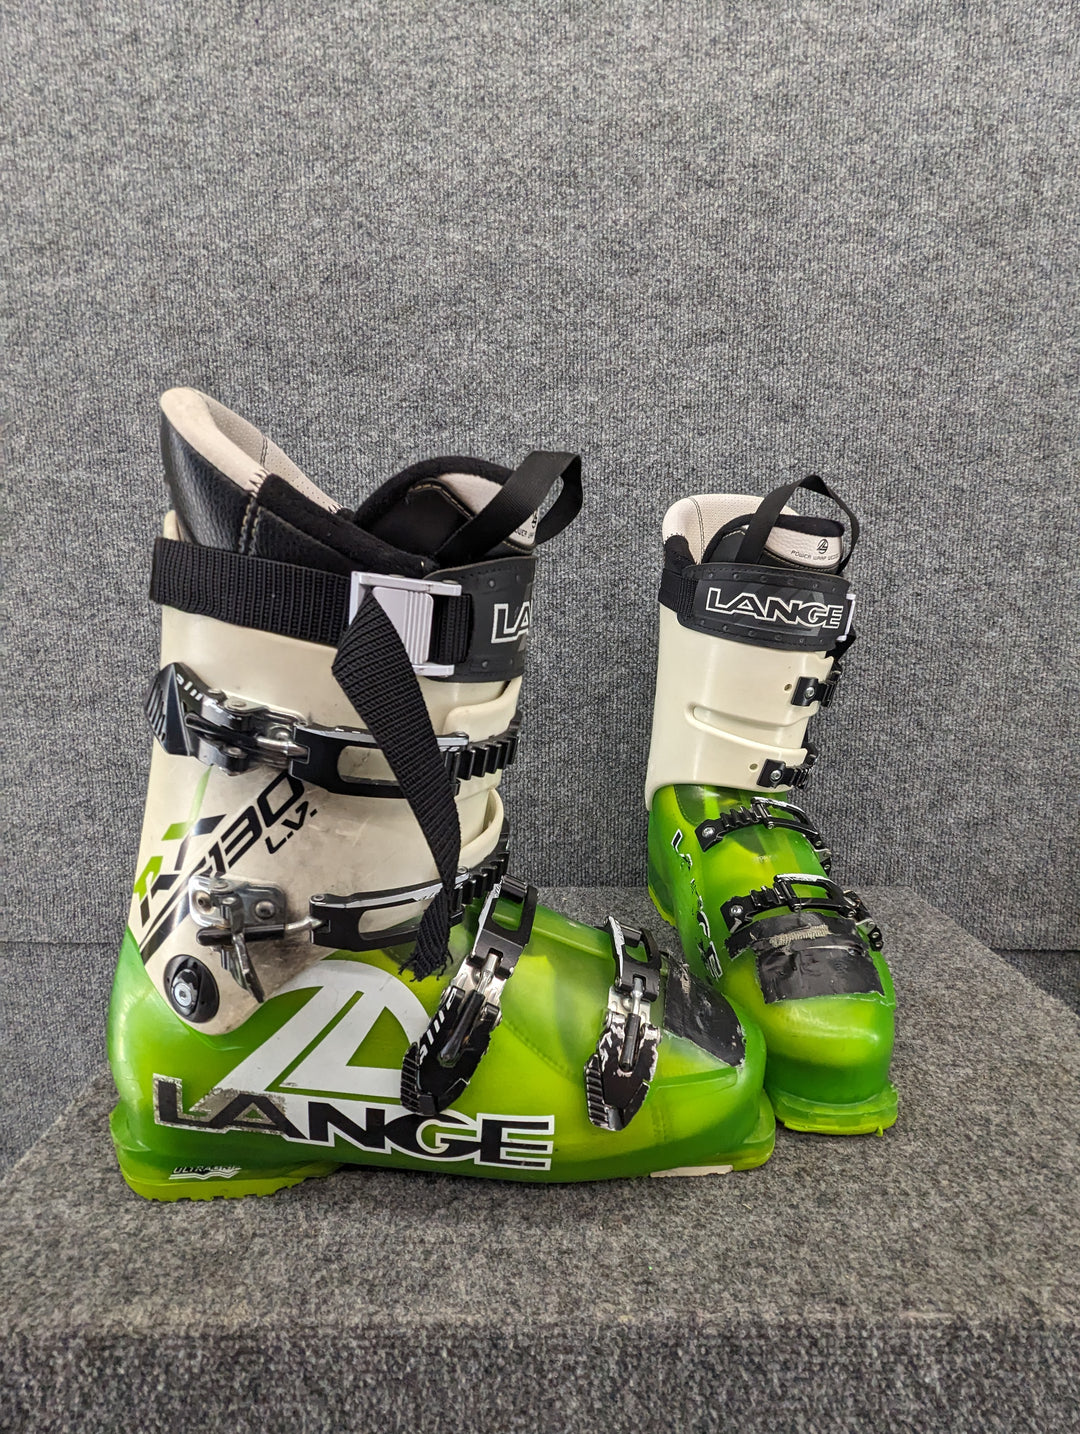 Hovedløse studieafgift Ledelse Lange Size 11.5/29.5 Alpine Ski Boots – Rambleraven Gear Trader